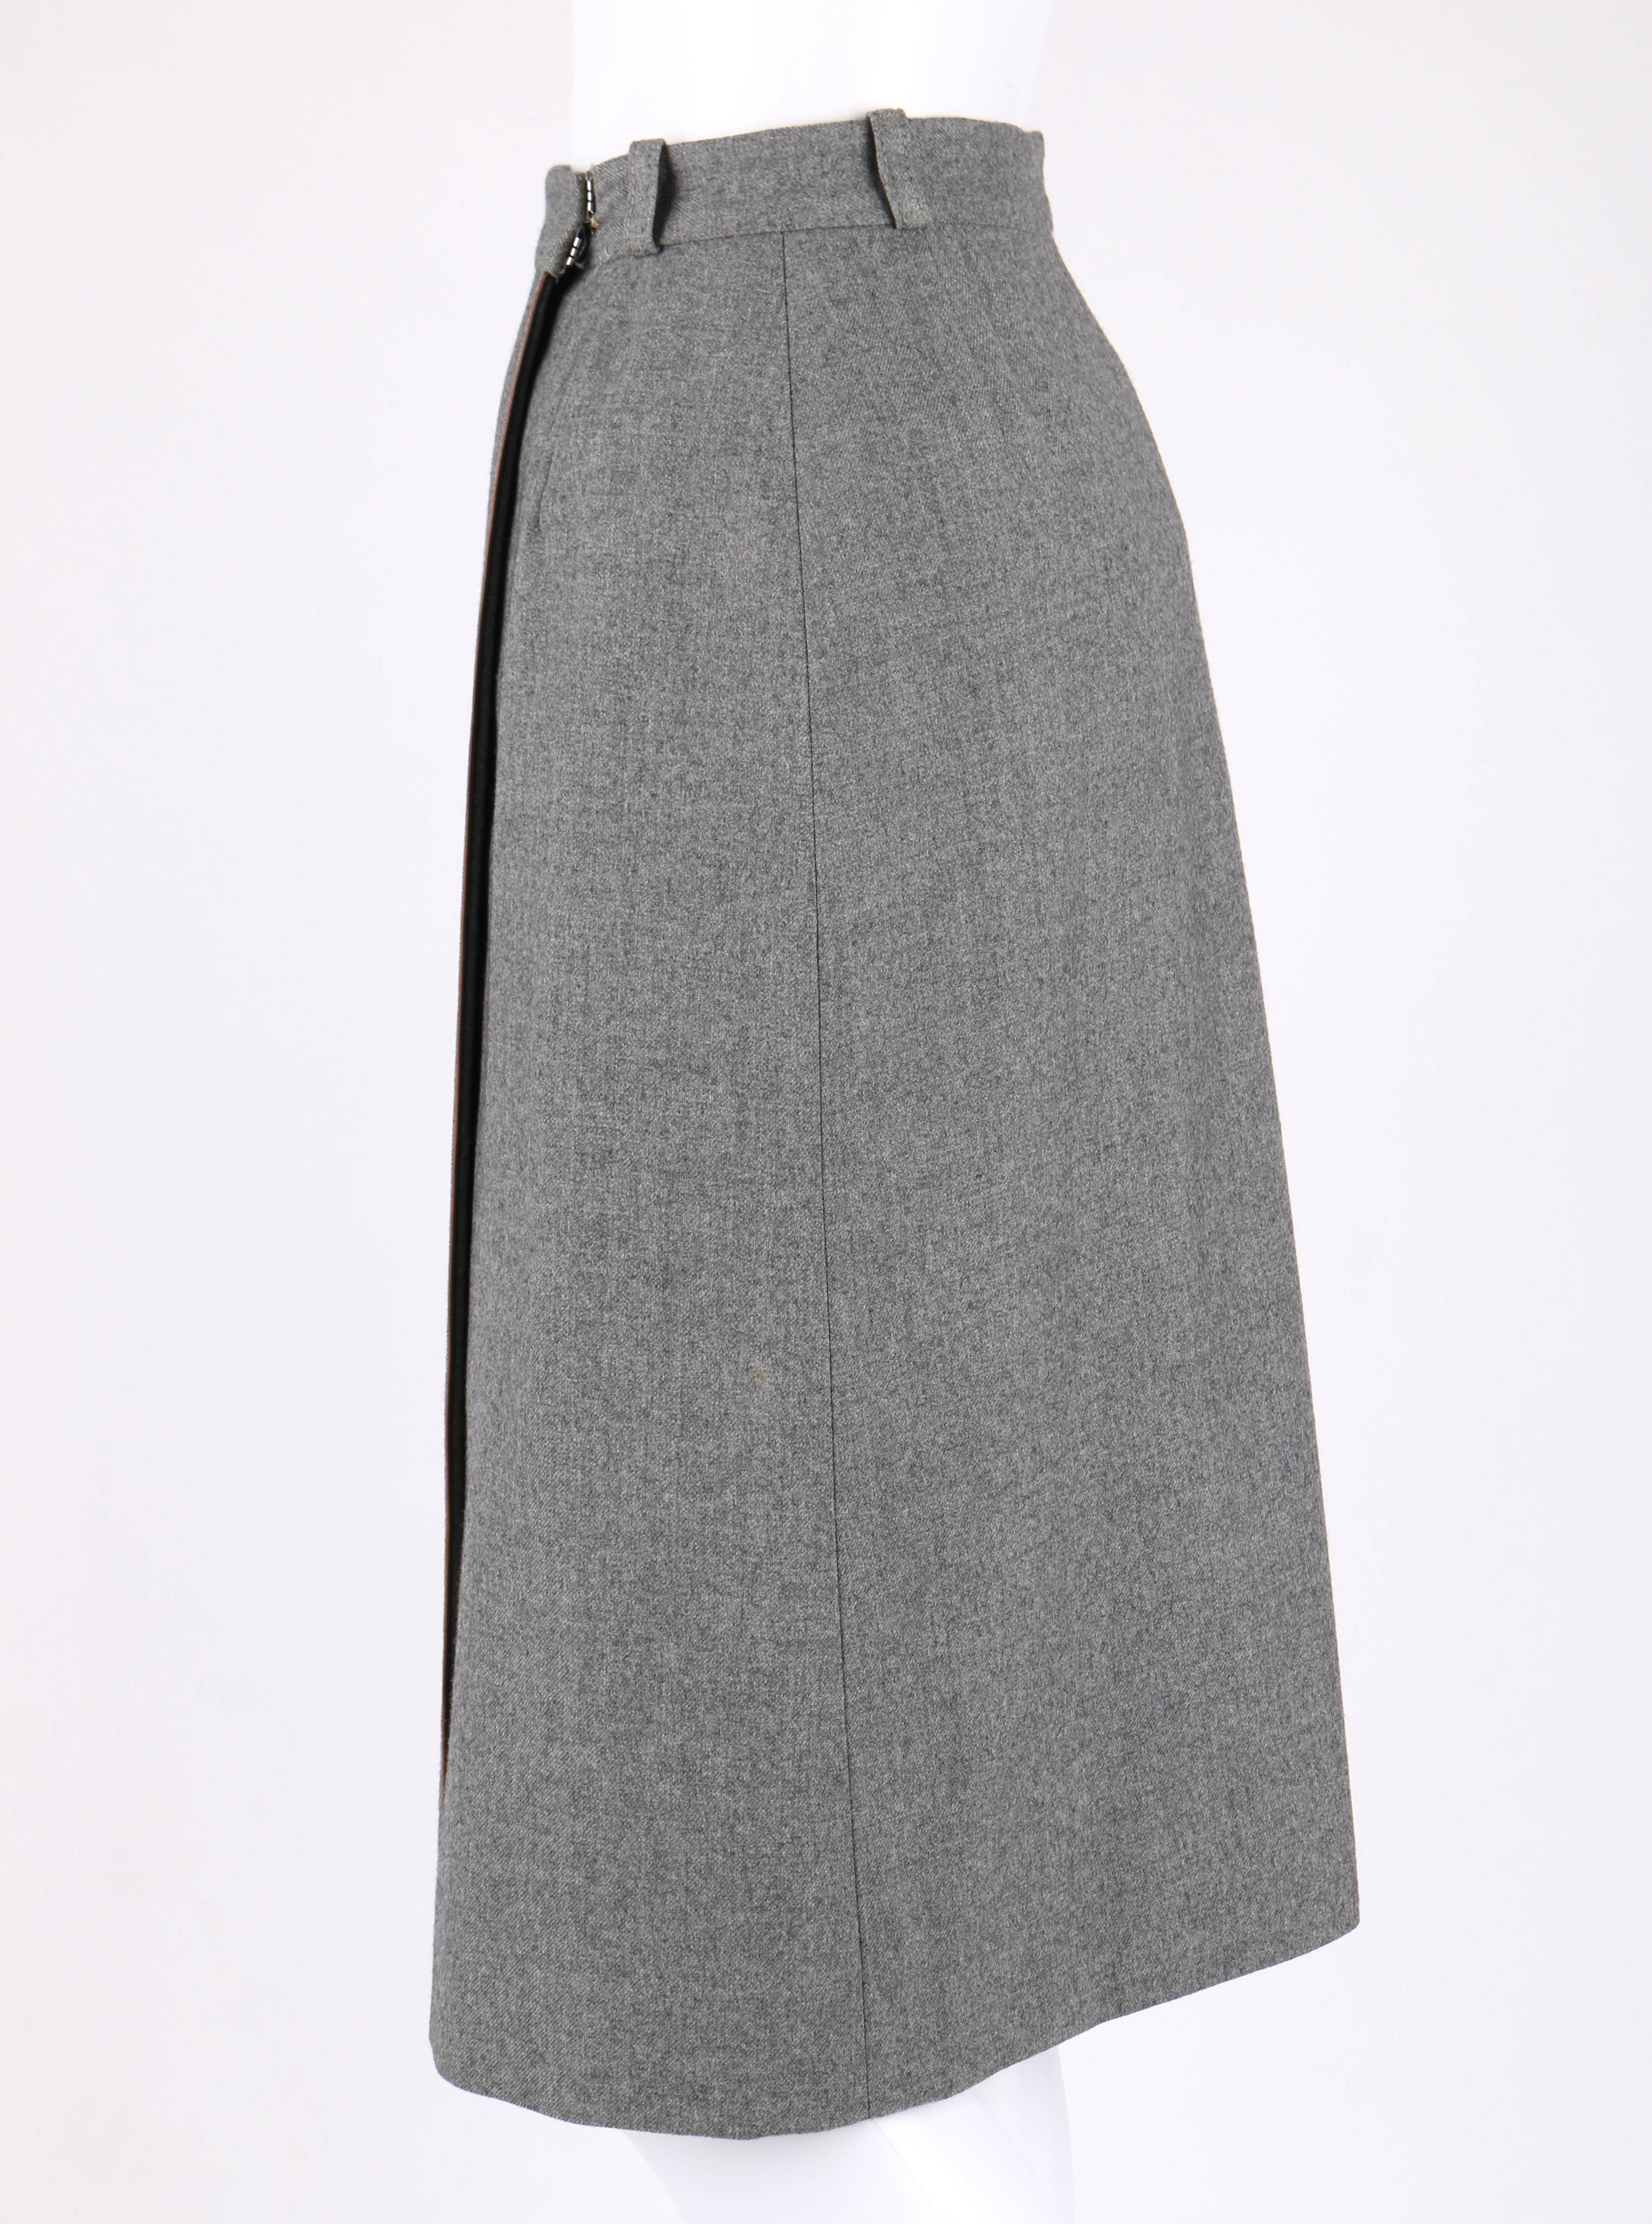 GUCCI Jupe portefeuille classique en laine grise avec bordure en cuir marron et passepoil, circa années 1970 Pour femmes en vente